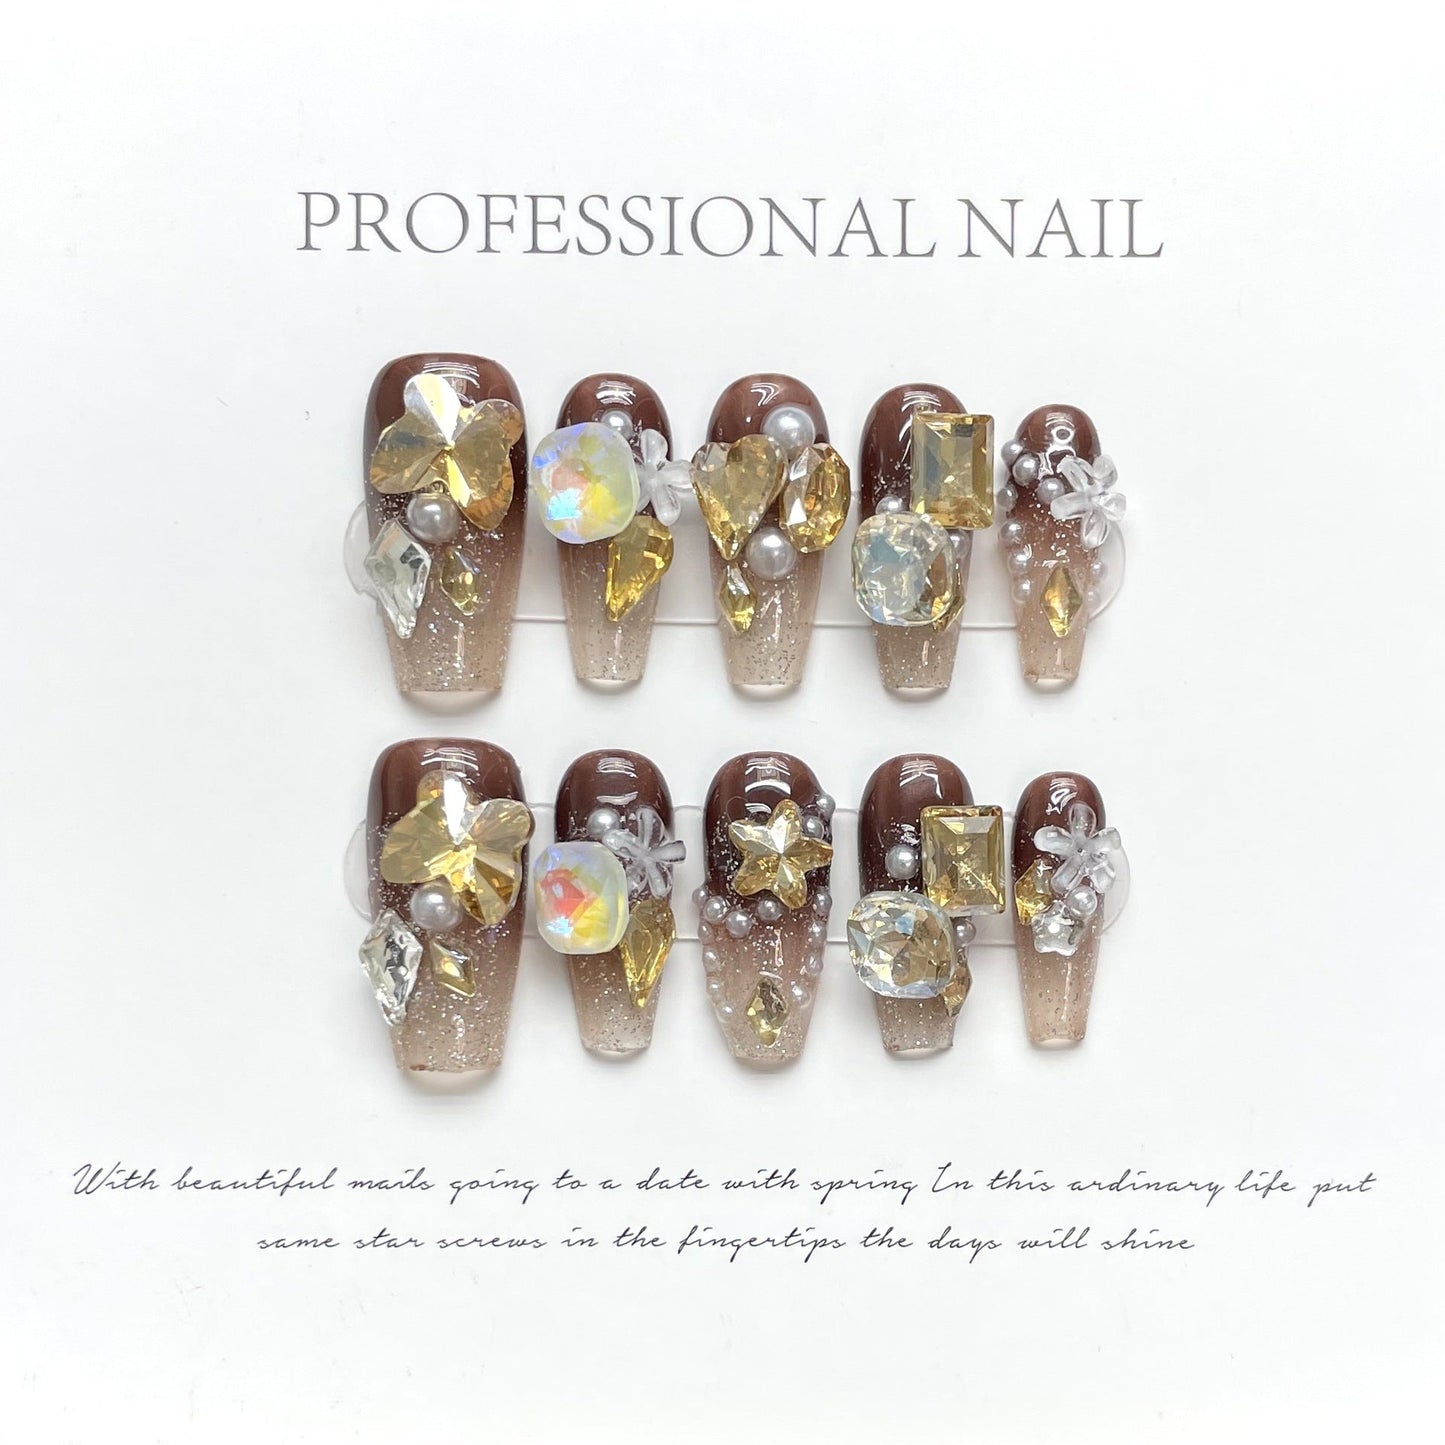 986 strass-stijl pers op nagels 100% handgemaakte kunstnagels bruin goud